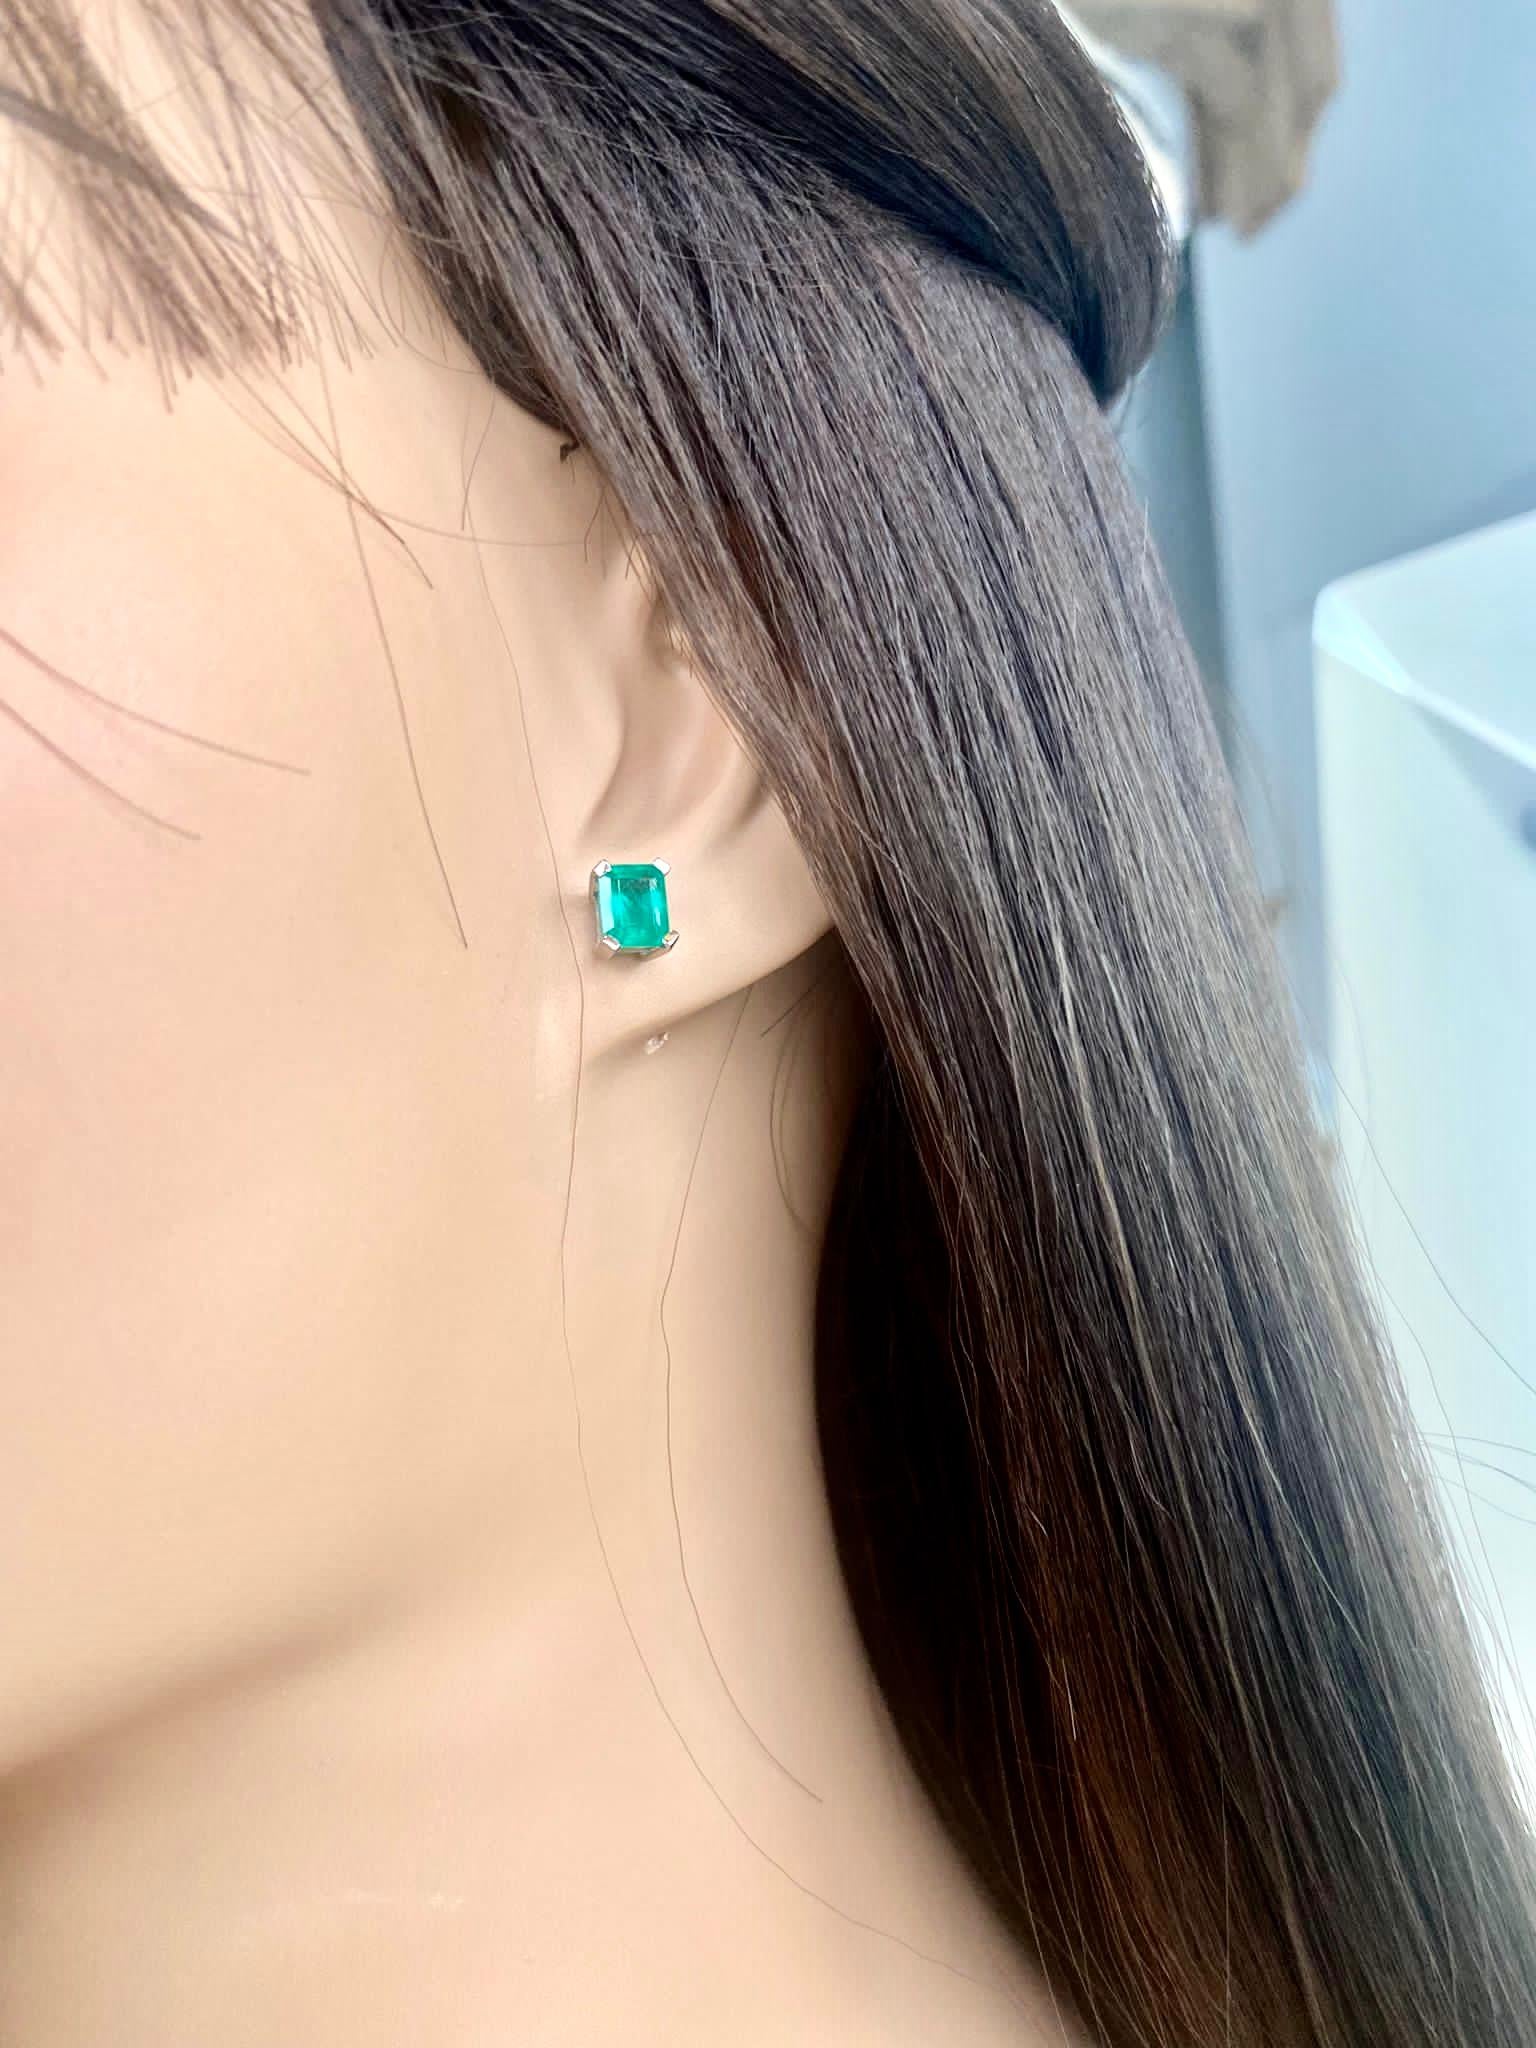 Emeralds Maravellous 2.09 Carat Fine Colombian Emerald Stud Earrings 18K For Sale 4